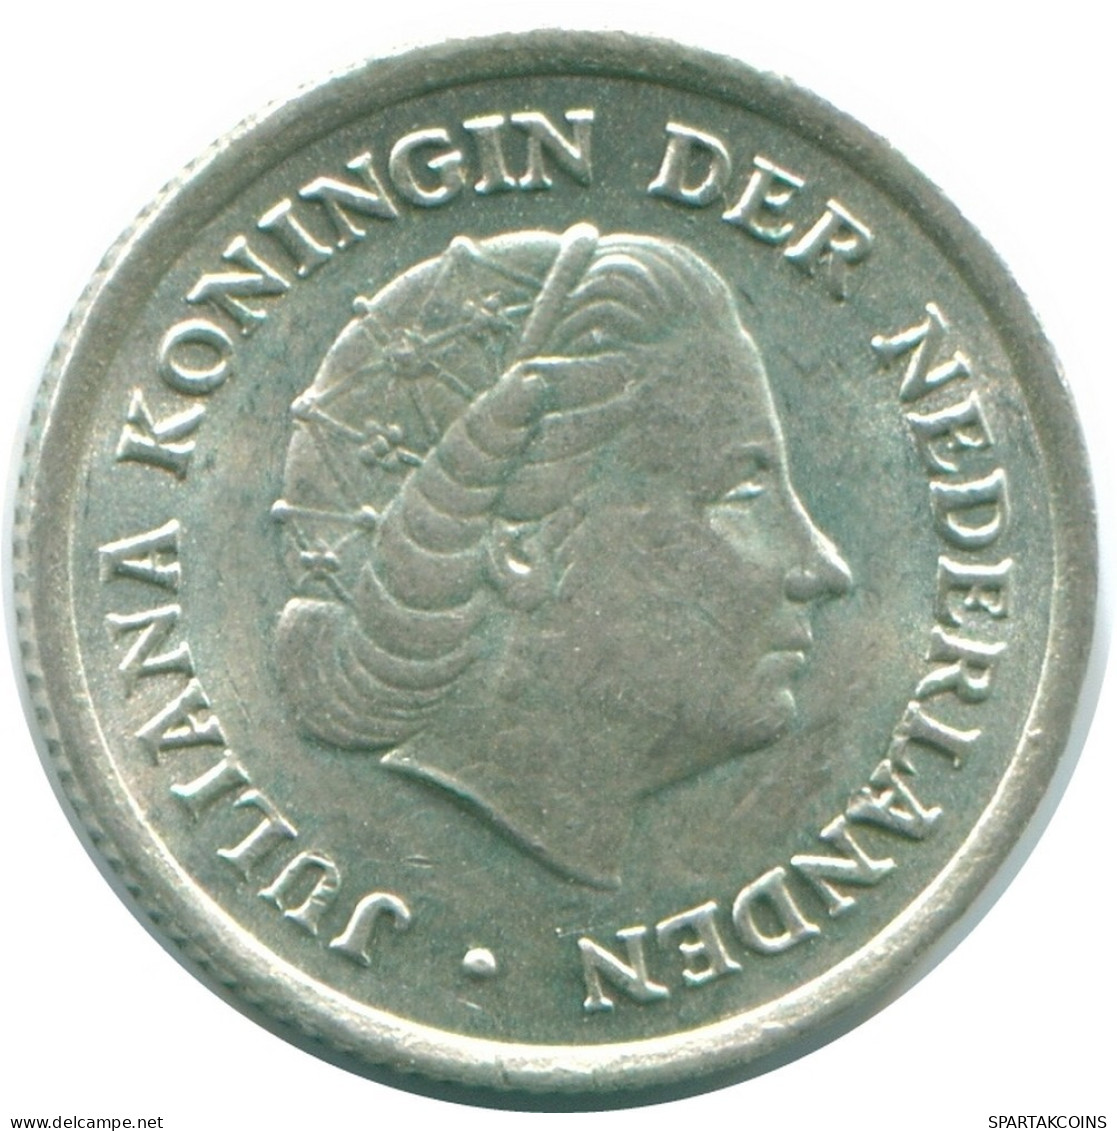 1/10 GULDEN 1966 NIEDERLÄNDISCHE ANTILLEN SILBER Koloniale Münze #NL12743.3.D.A - Antillas Neerlandesas